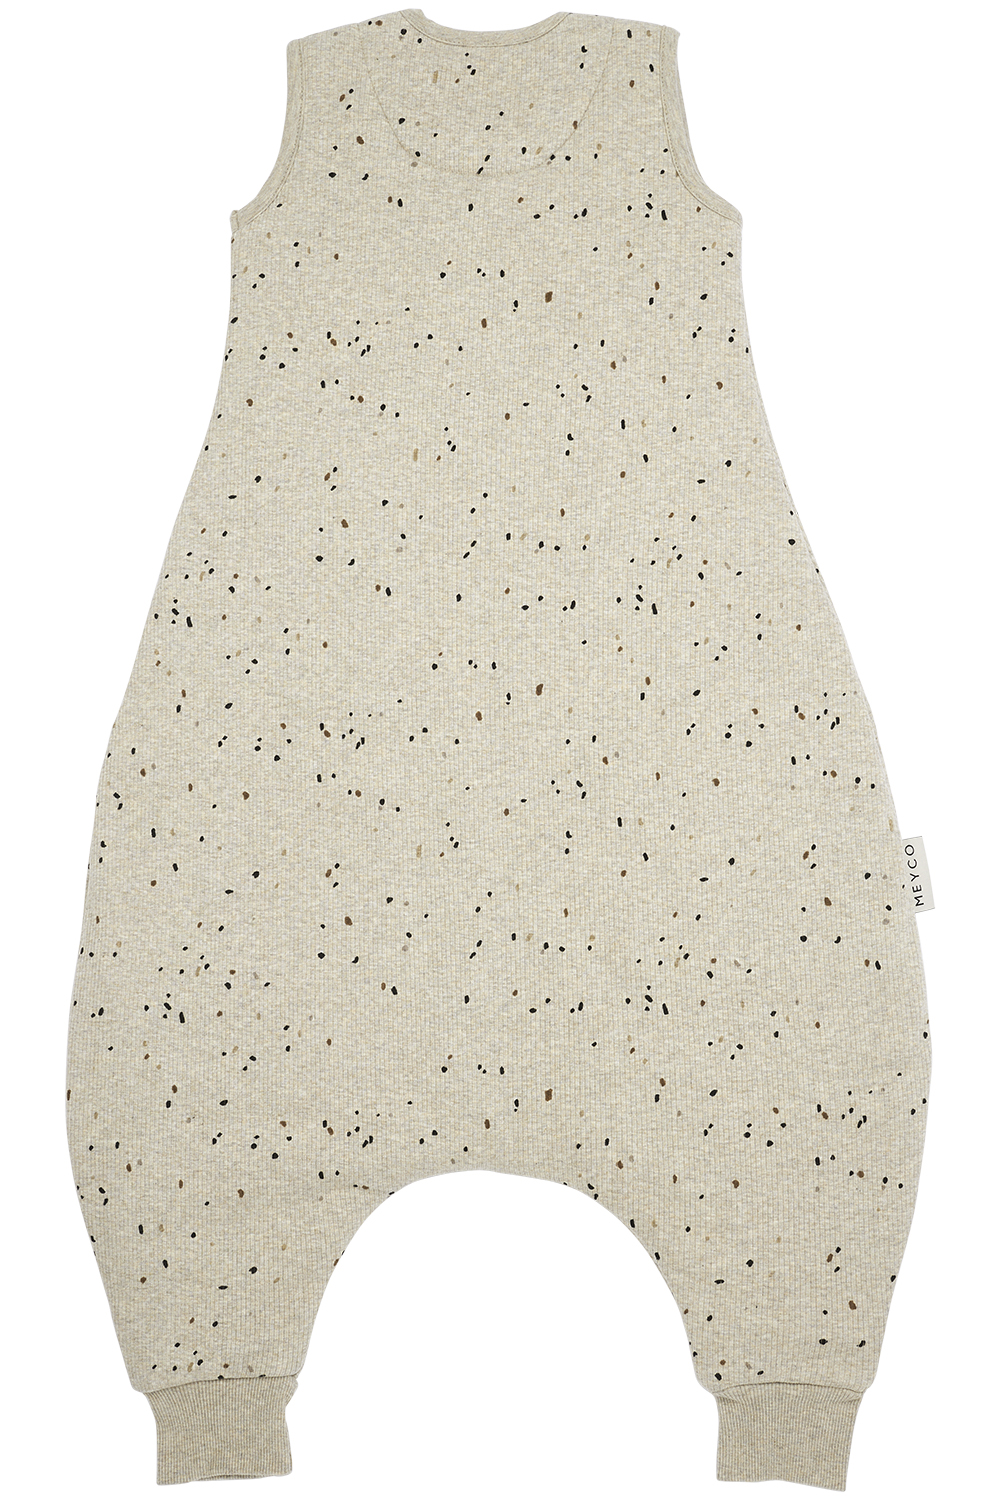 Baby winter slaapoverall jumper Rib Mini Spot - sand melange - 104cm